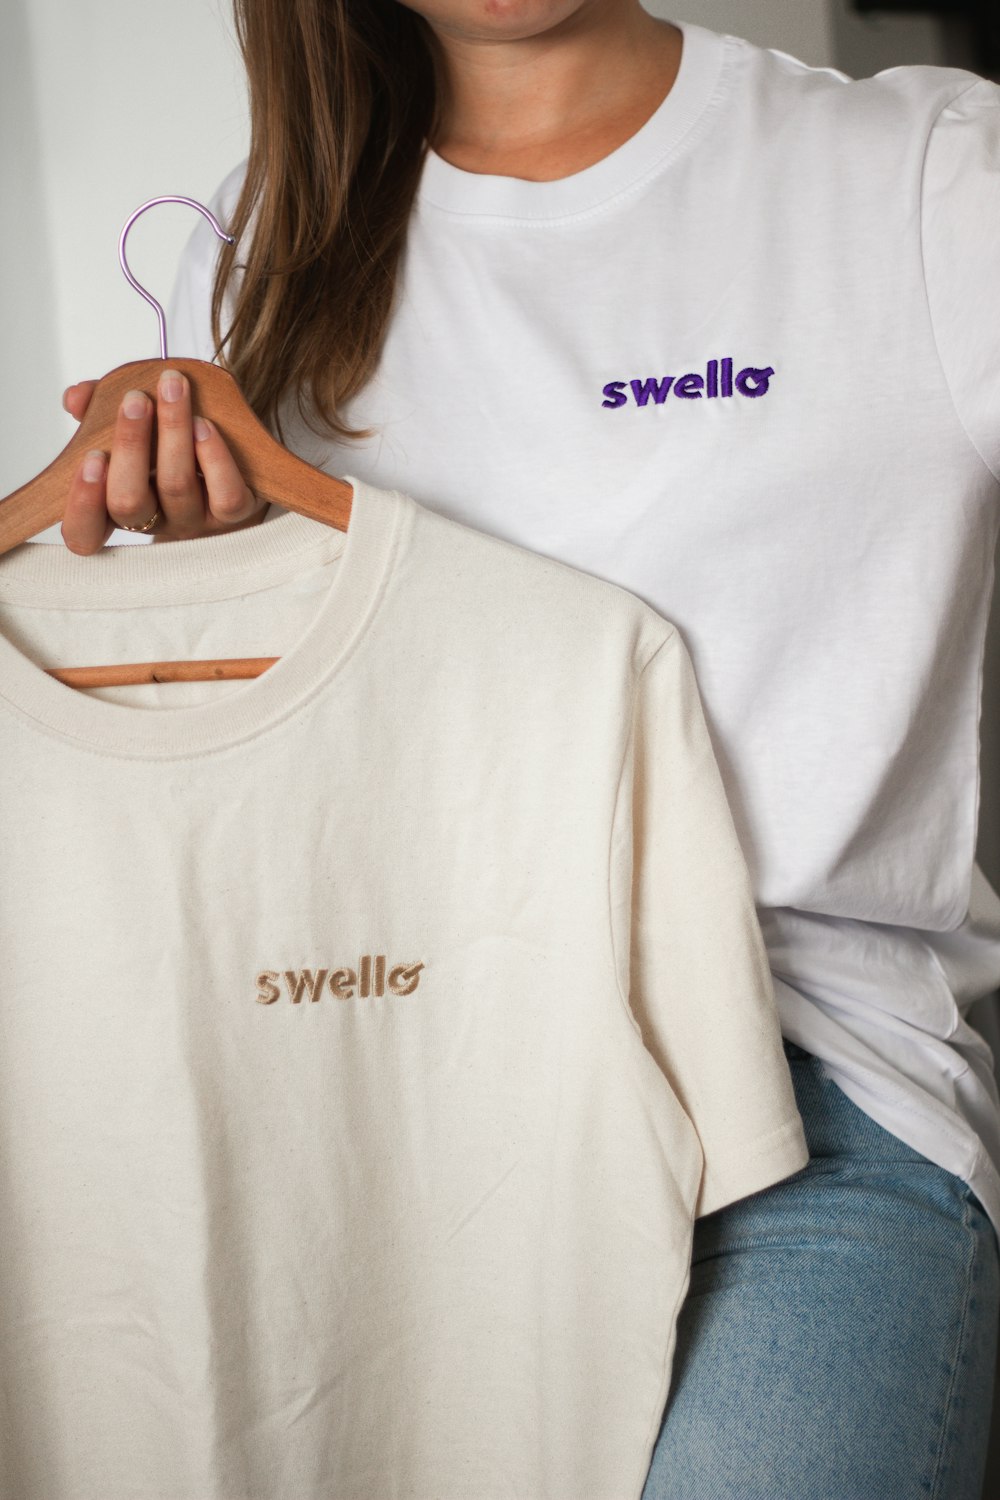 Una mujer sosteniendo una camiseta blanca con la palabra Swelllo